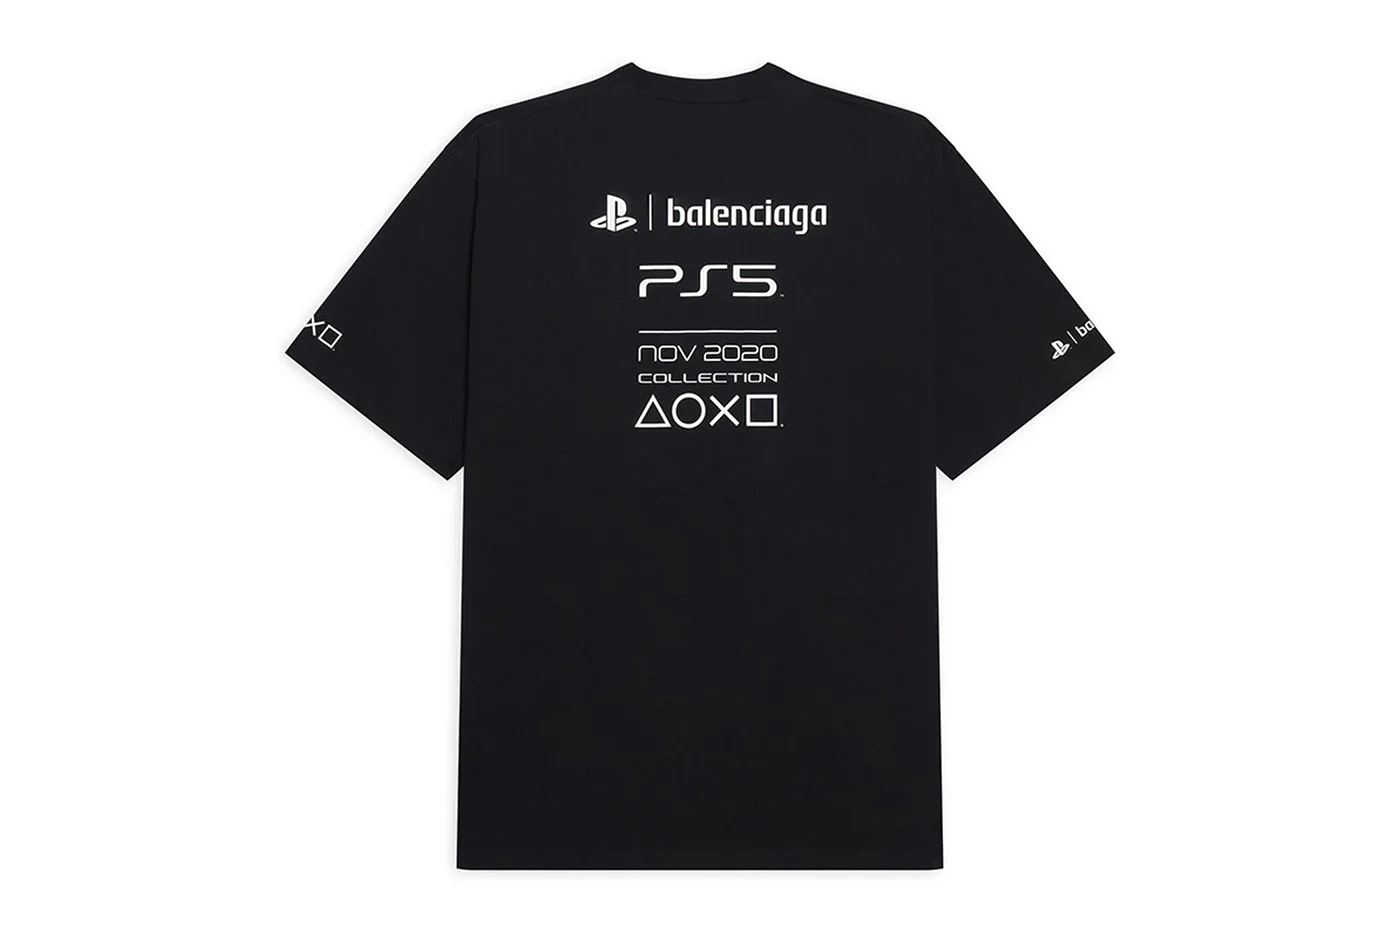 Футболки дороже консолей: Balenciaga выпустил коллаборацию с PlayStation 5 - изображение 1